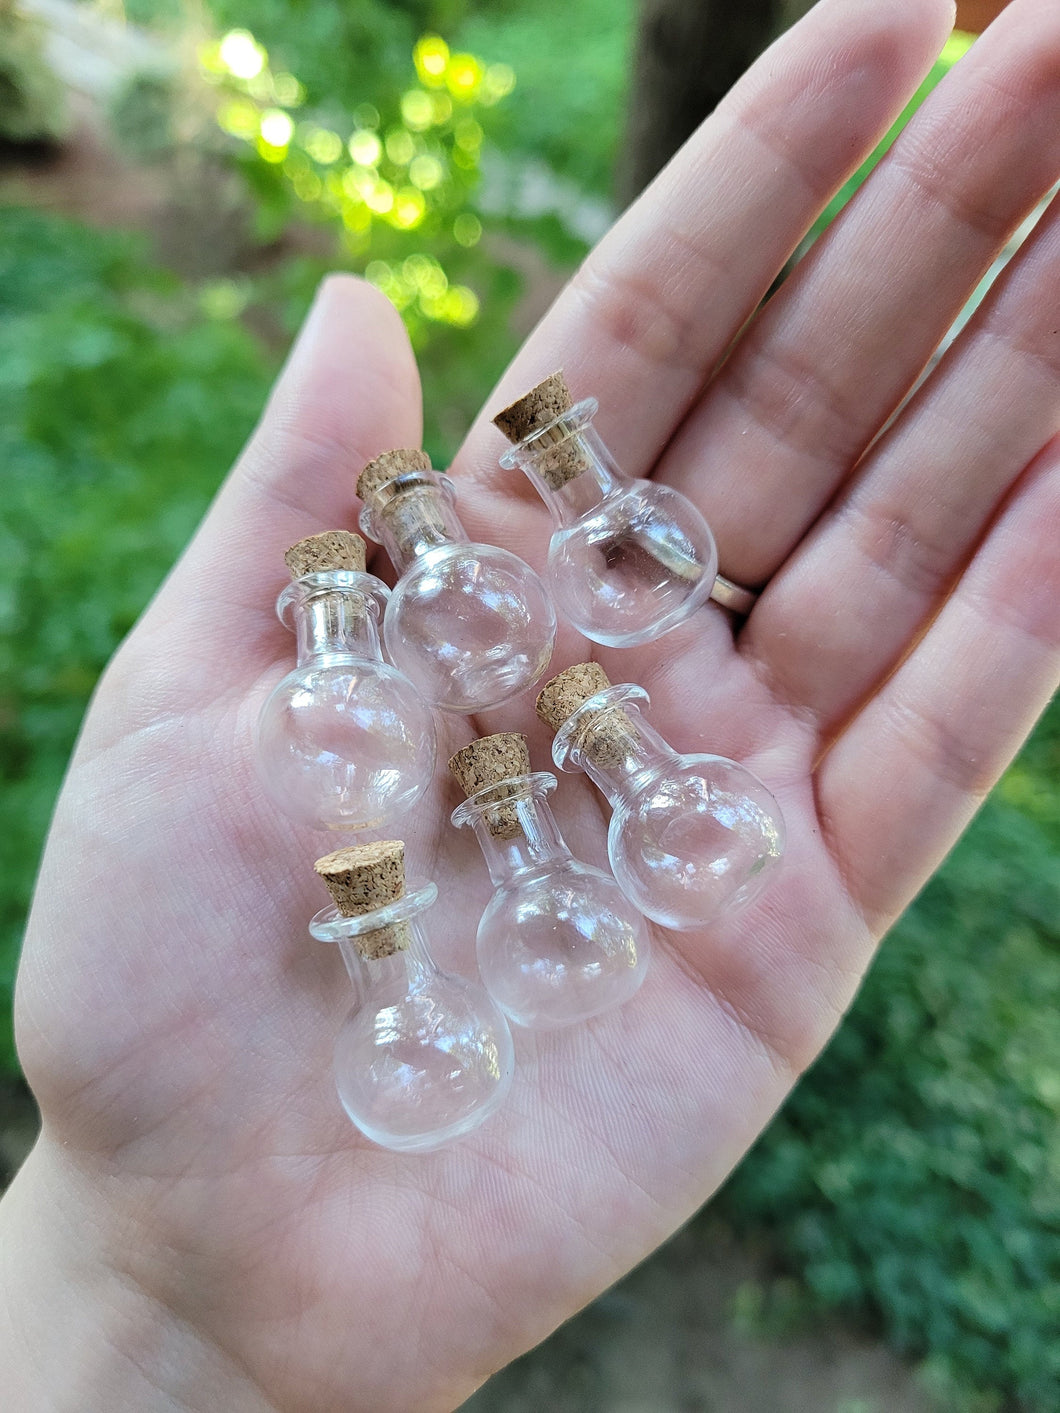 Mini Potion Bottles 6pk - 2ml Glass w/ Cork